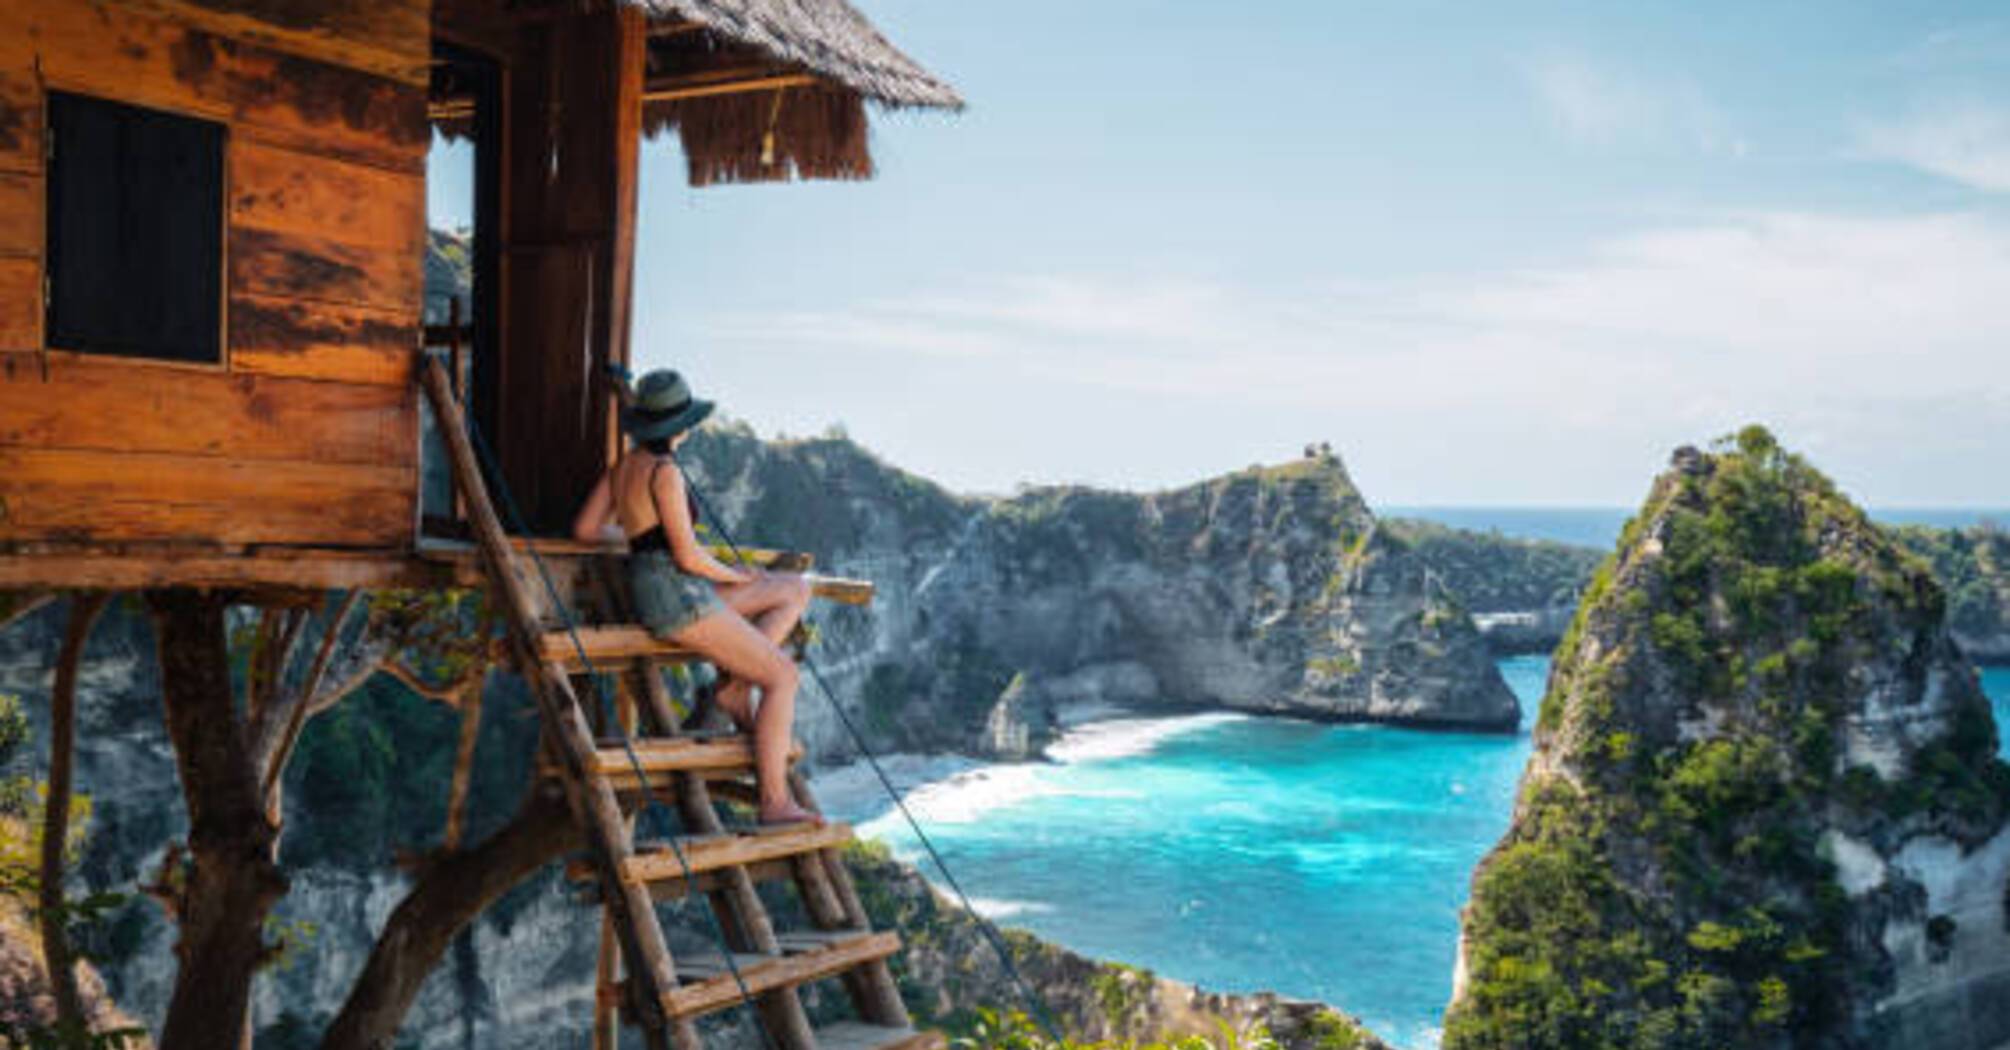 Домініка чи Балі: яка країна краще підійде для туристів